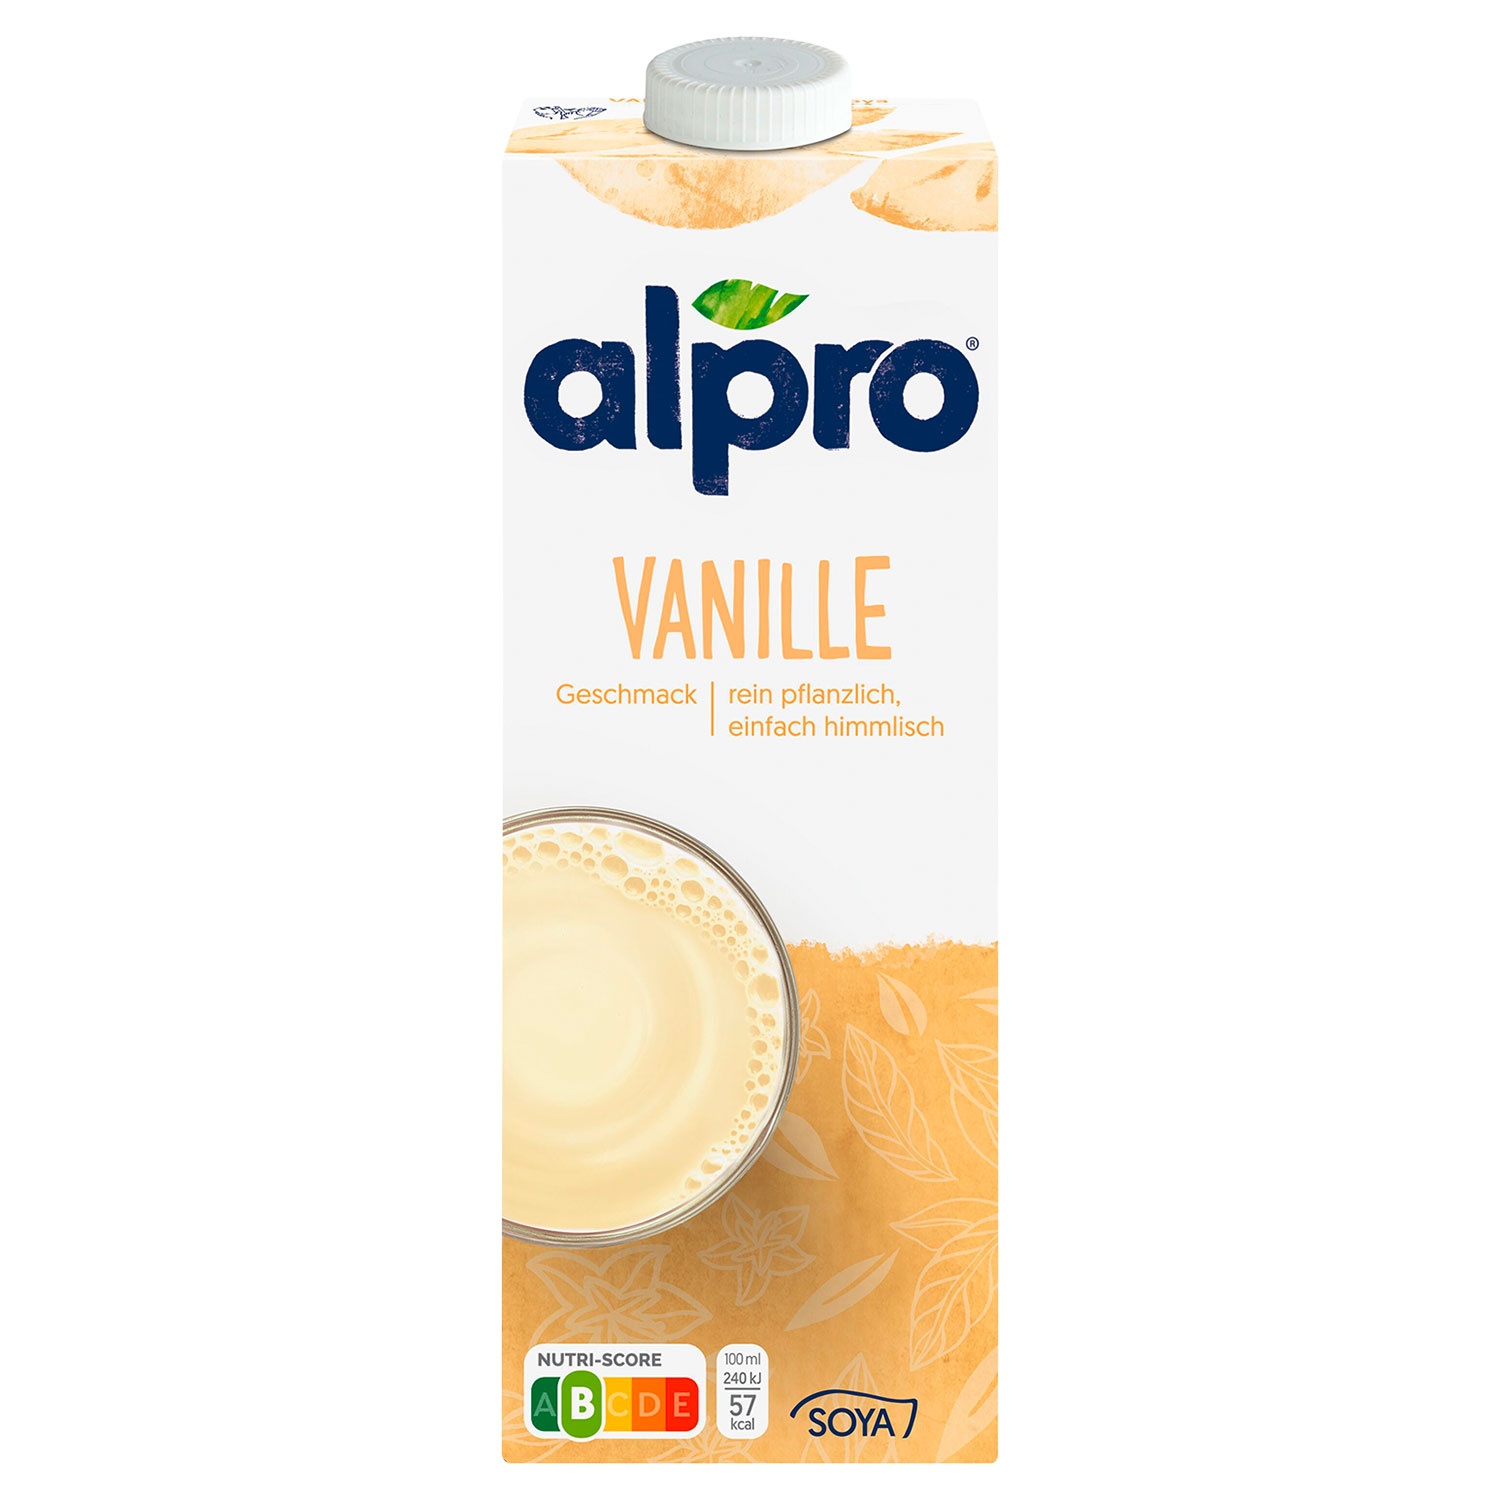 ALPRO® Soja-Drink 1 l